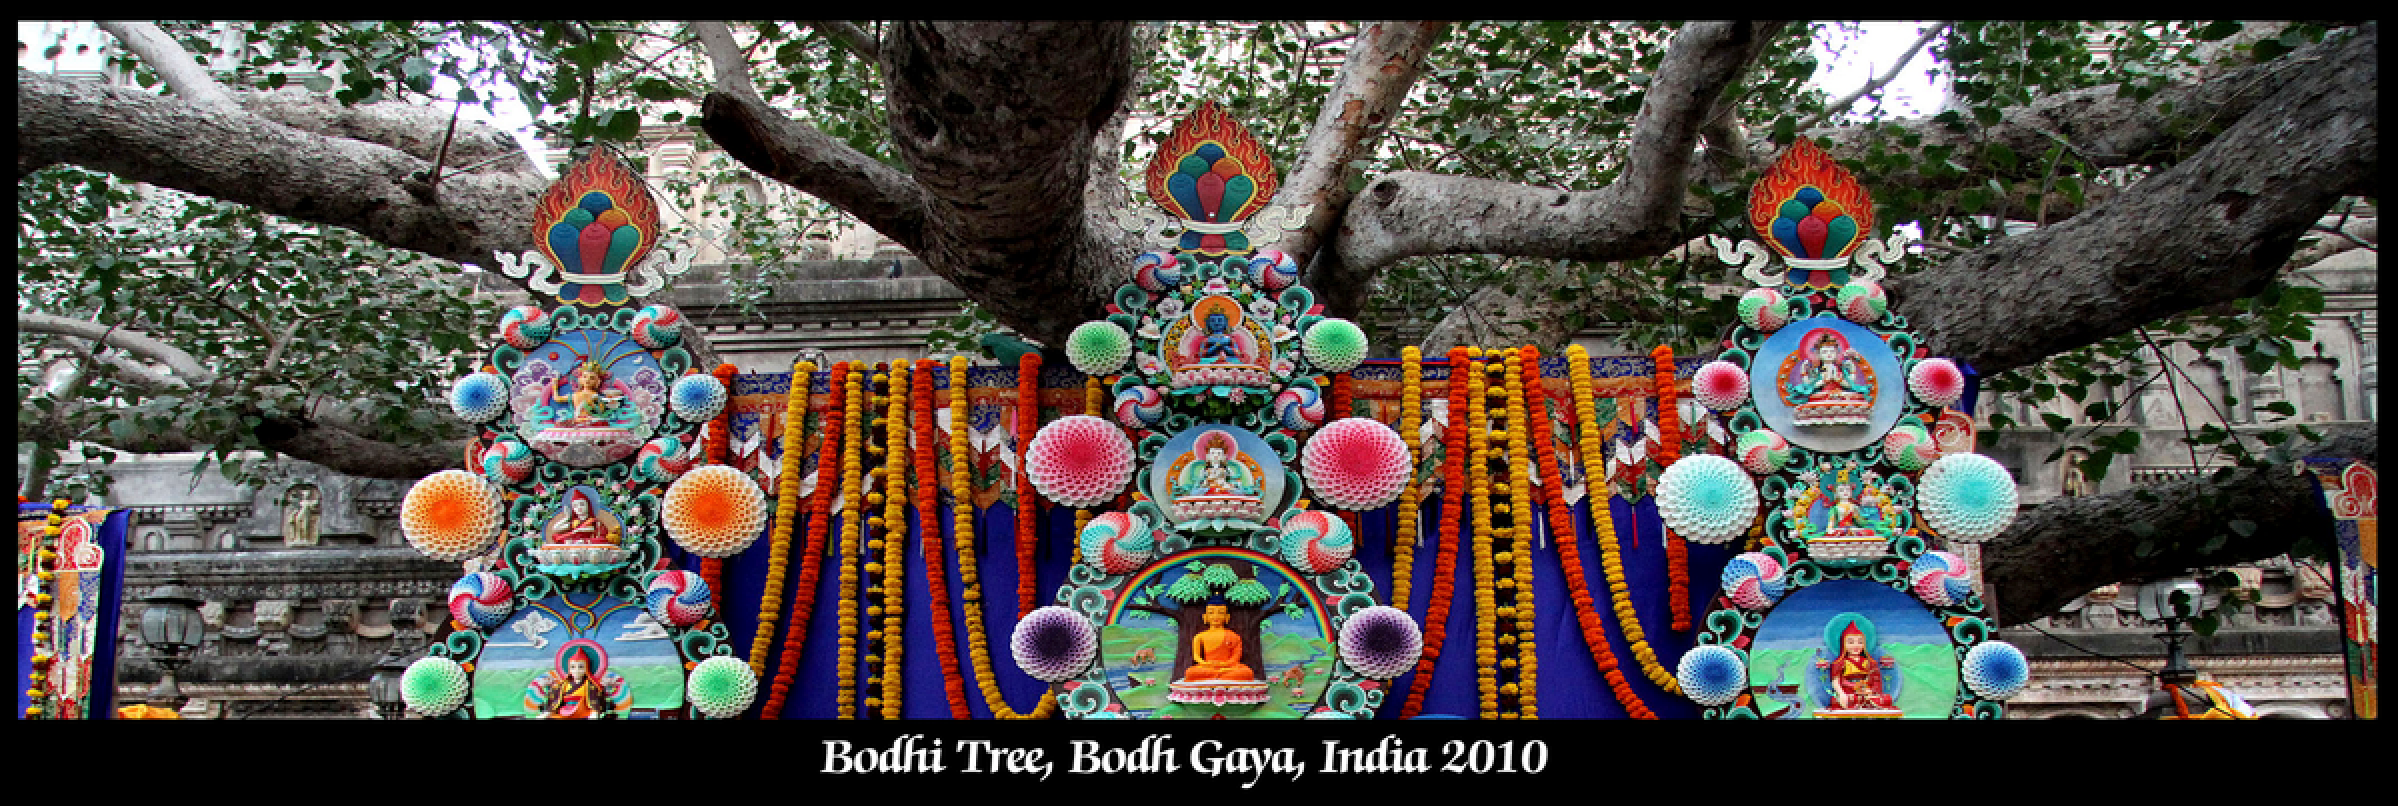 db-04-Bodh Gaya